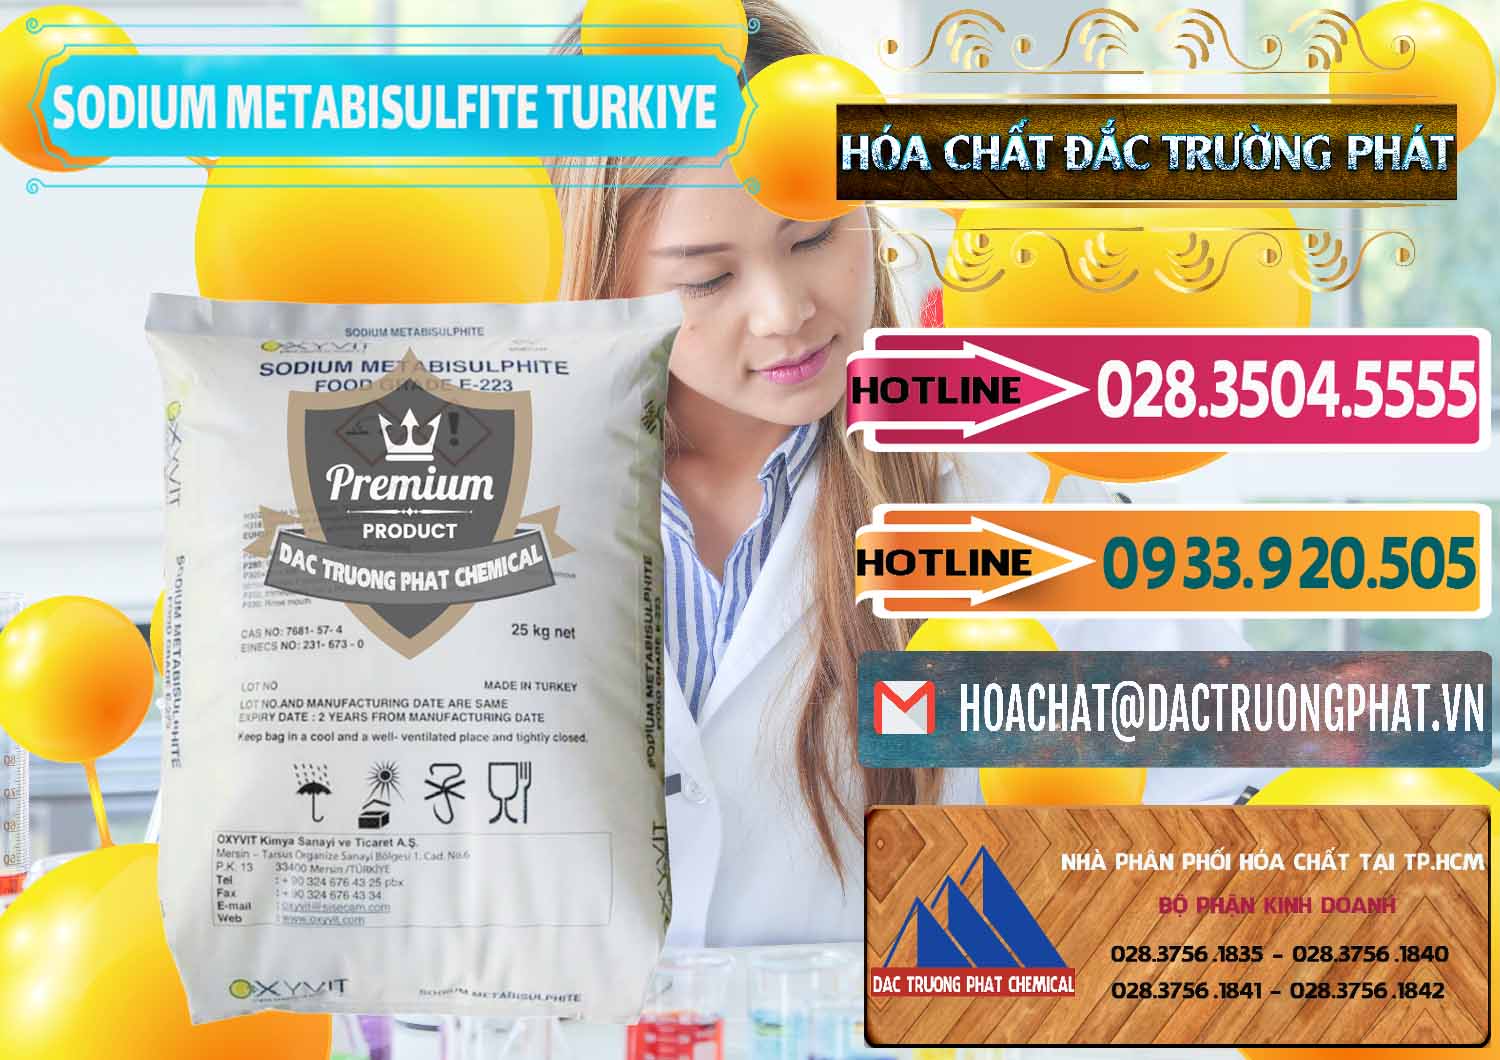 Nơi cung ứng & bán Sodium Metabisulfite - NA2S2O5 Food Grade E-223 Thổ Nhĩ Kỳ Turkey - 0413 - Đơn vị chuyên cung cấp & bán hóa chất tại TP.HCM - dactruongphat.vn